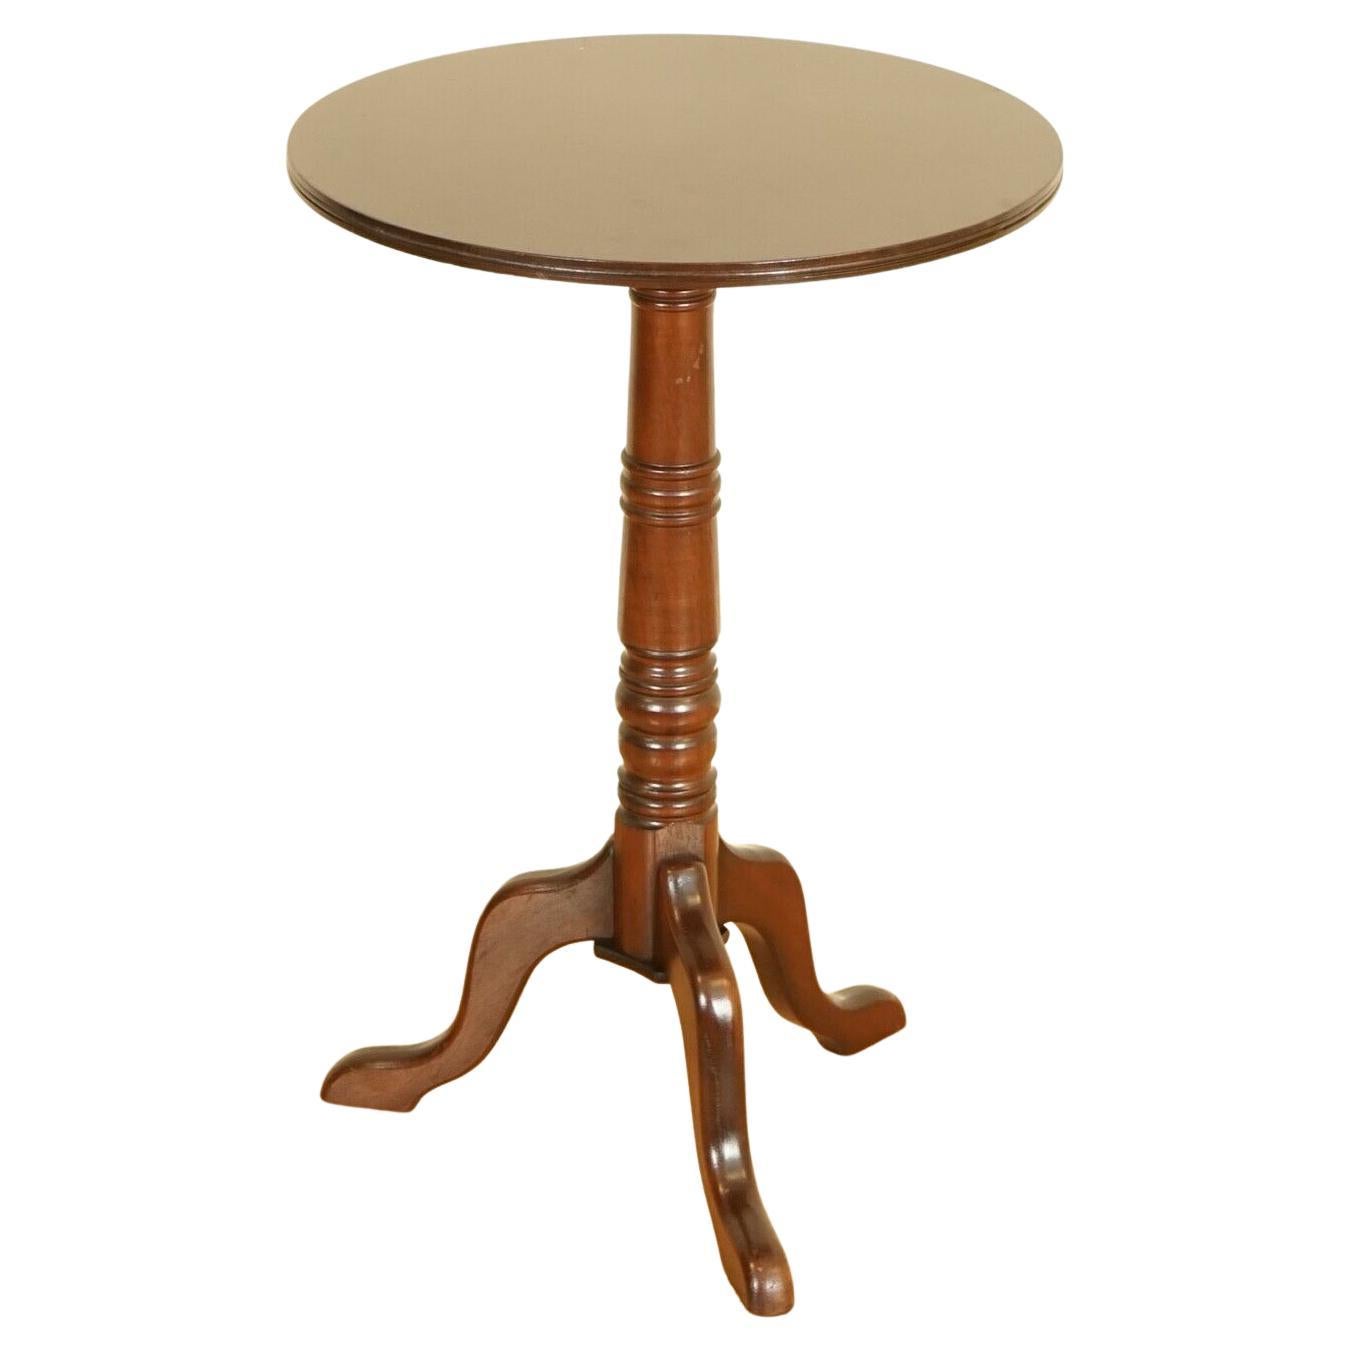 Atemberaubender viktorianischer Beistelltisch/Wine-Tisch auf eleganten Dreibein-Beinen